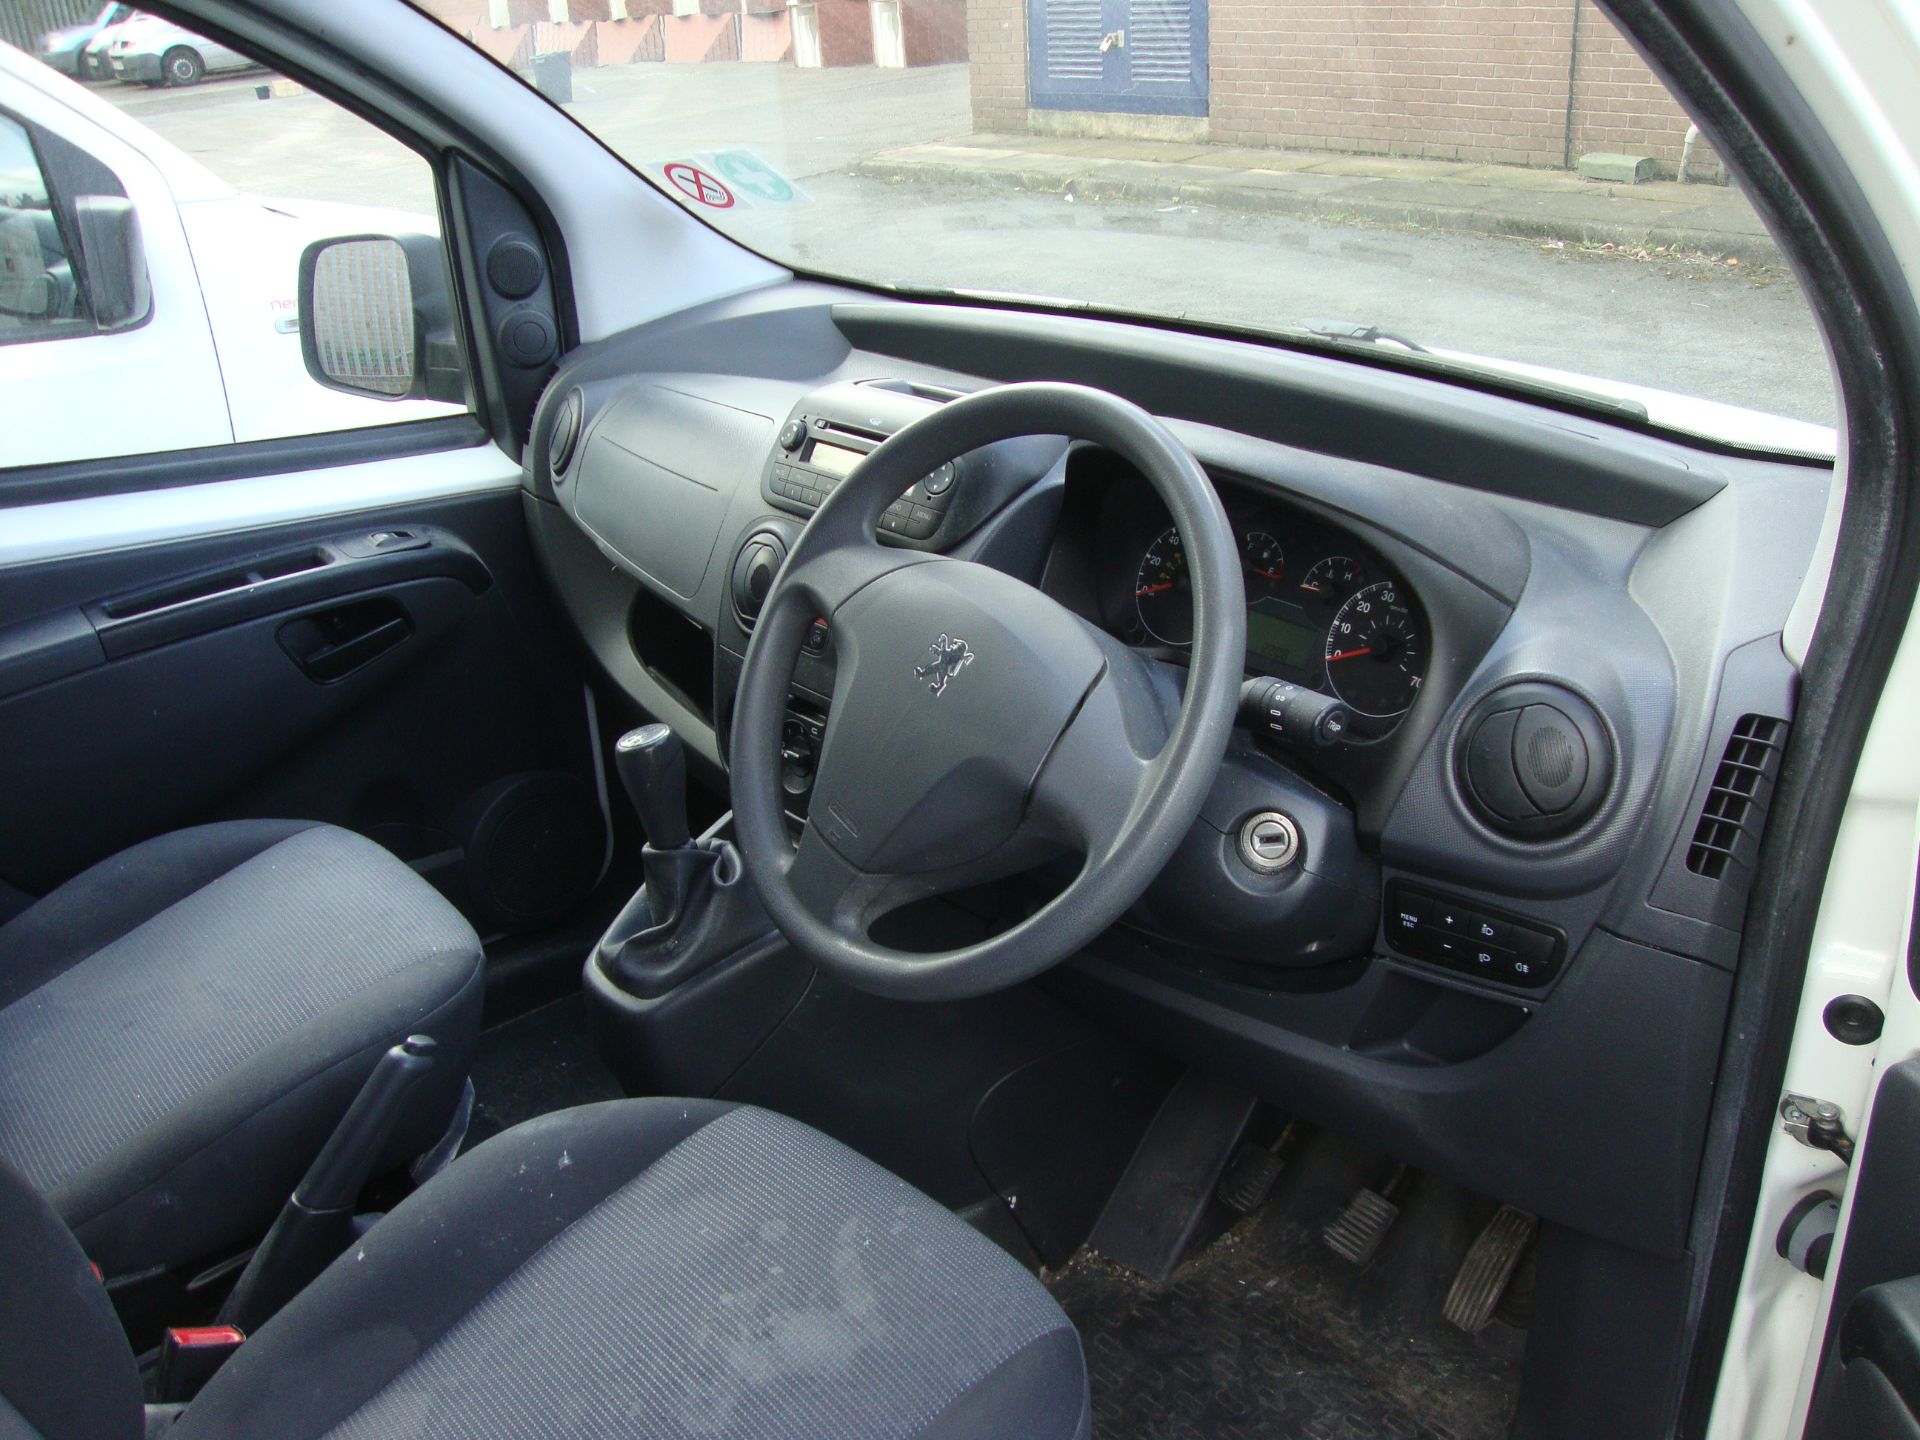 2010 Peugeot Bipper S HDi panel van - Image 7 of 11